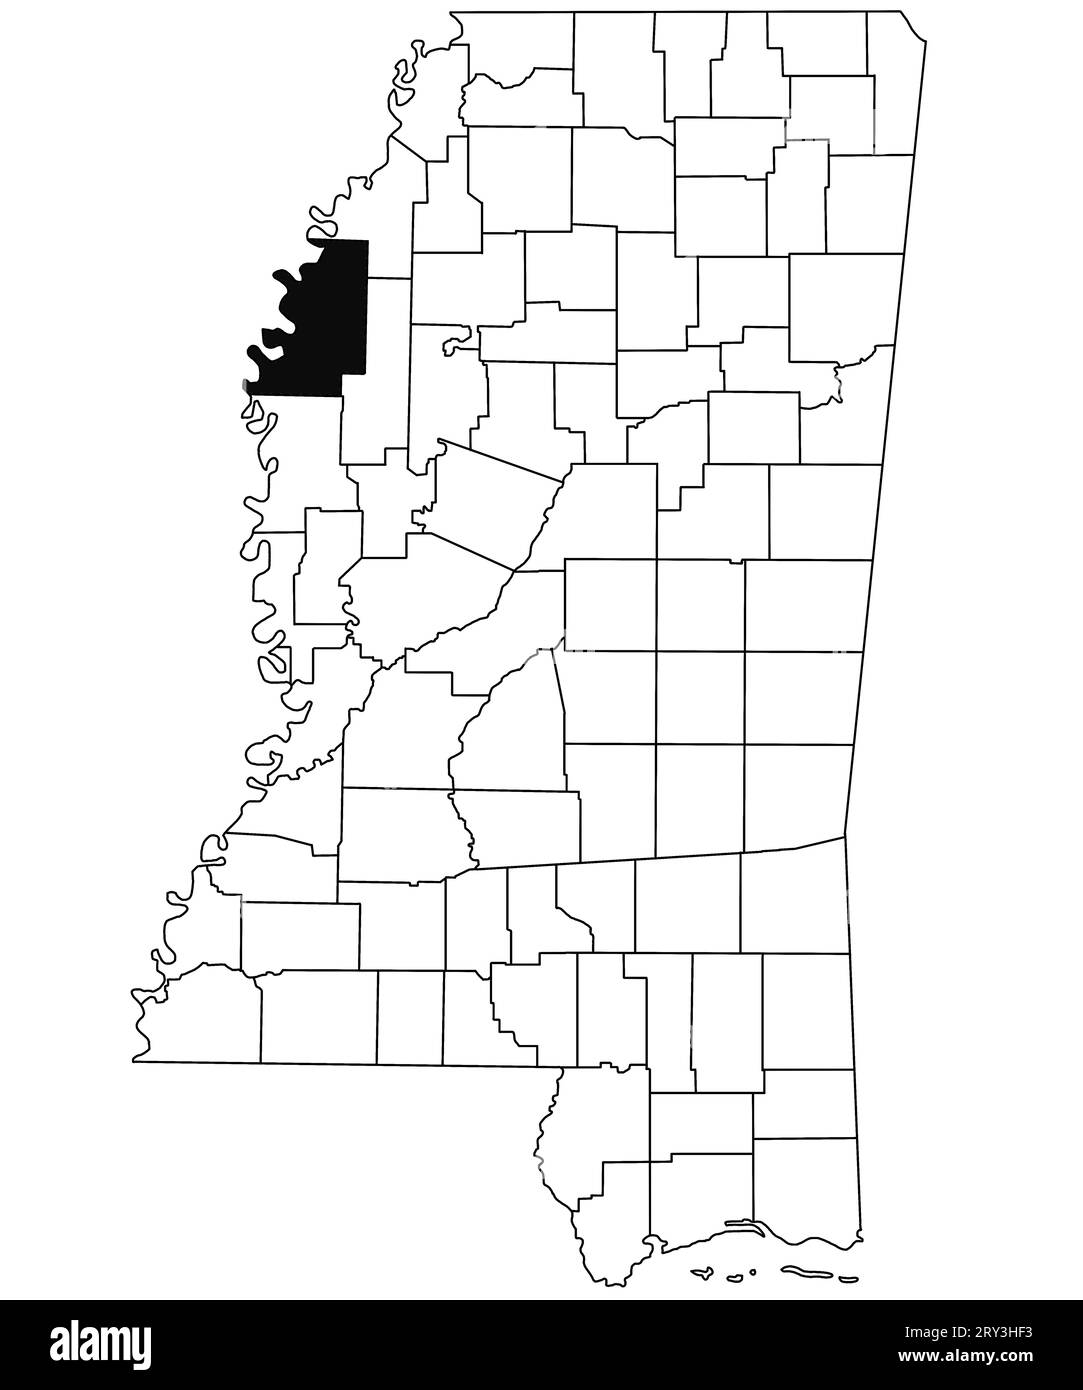 Mappa della contea di Bolivar nello stato del Mississippi su sfondo bianco. Mappa singola della contea evidenziata in nero sulla mappa del Mississippi. Stati Uniti d'America Foto Stock